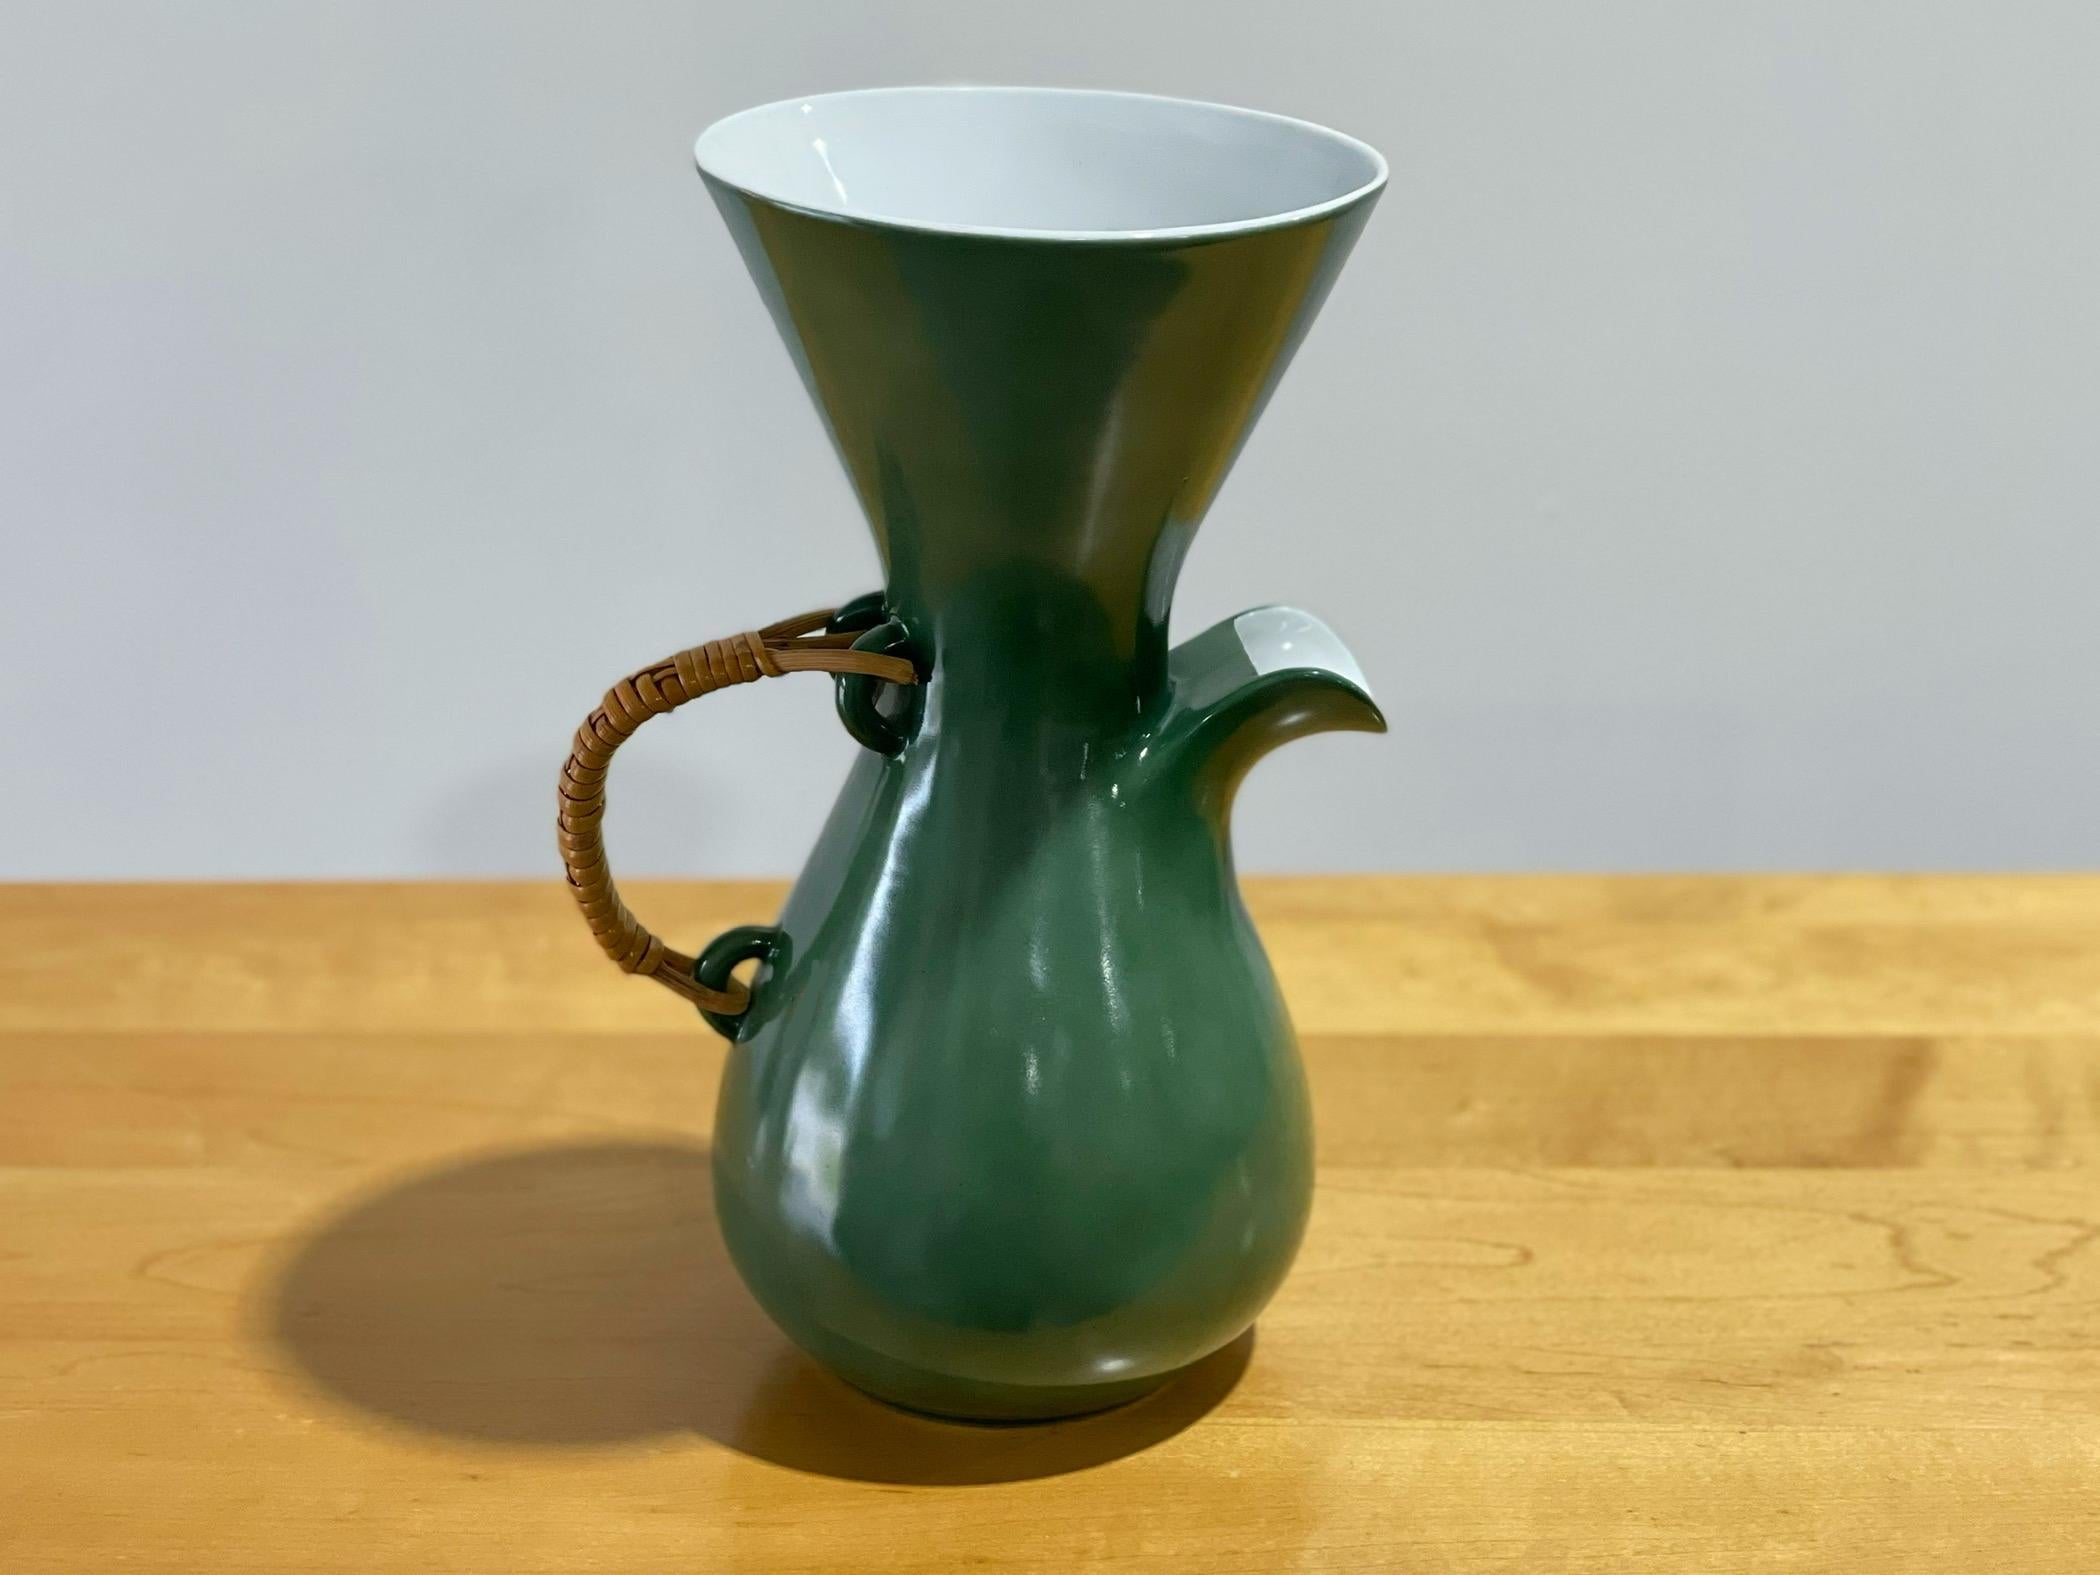 Exquisite modernistische Kaffeekaraffe, entworfen von Kenji Fujita für Freeman Lederman. Getränkekrug in seltener grüner Glasur mit glänzend weißer Innenseite. Gekennzeichnet mit dem FL-Logo. 
Ausgezeichneter Zustand - keine nennenswerten